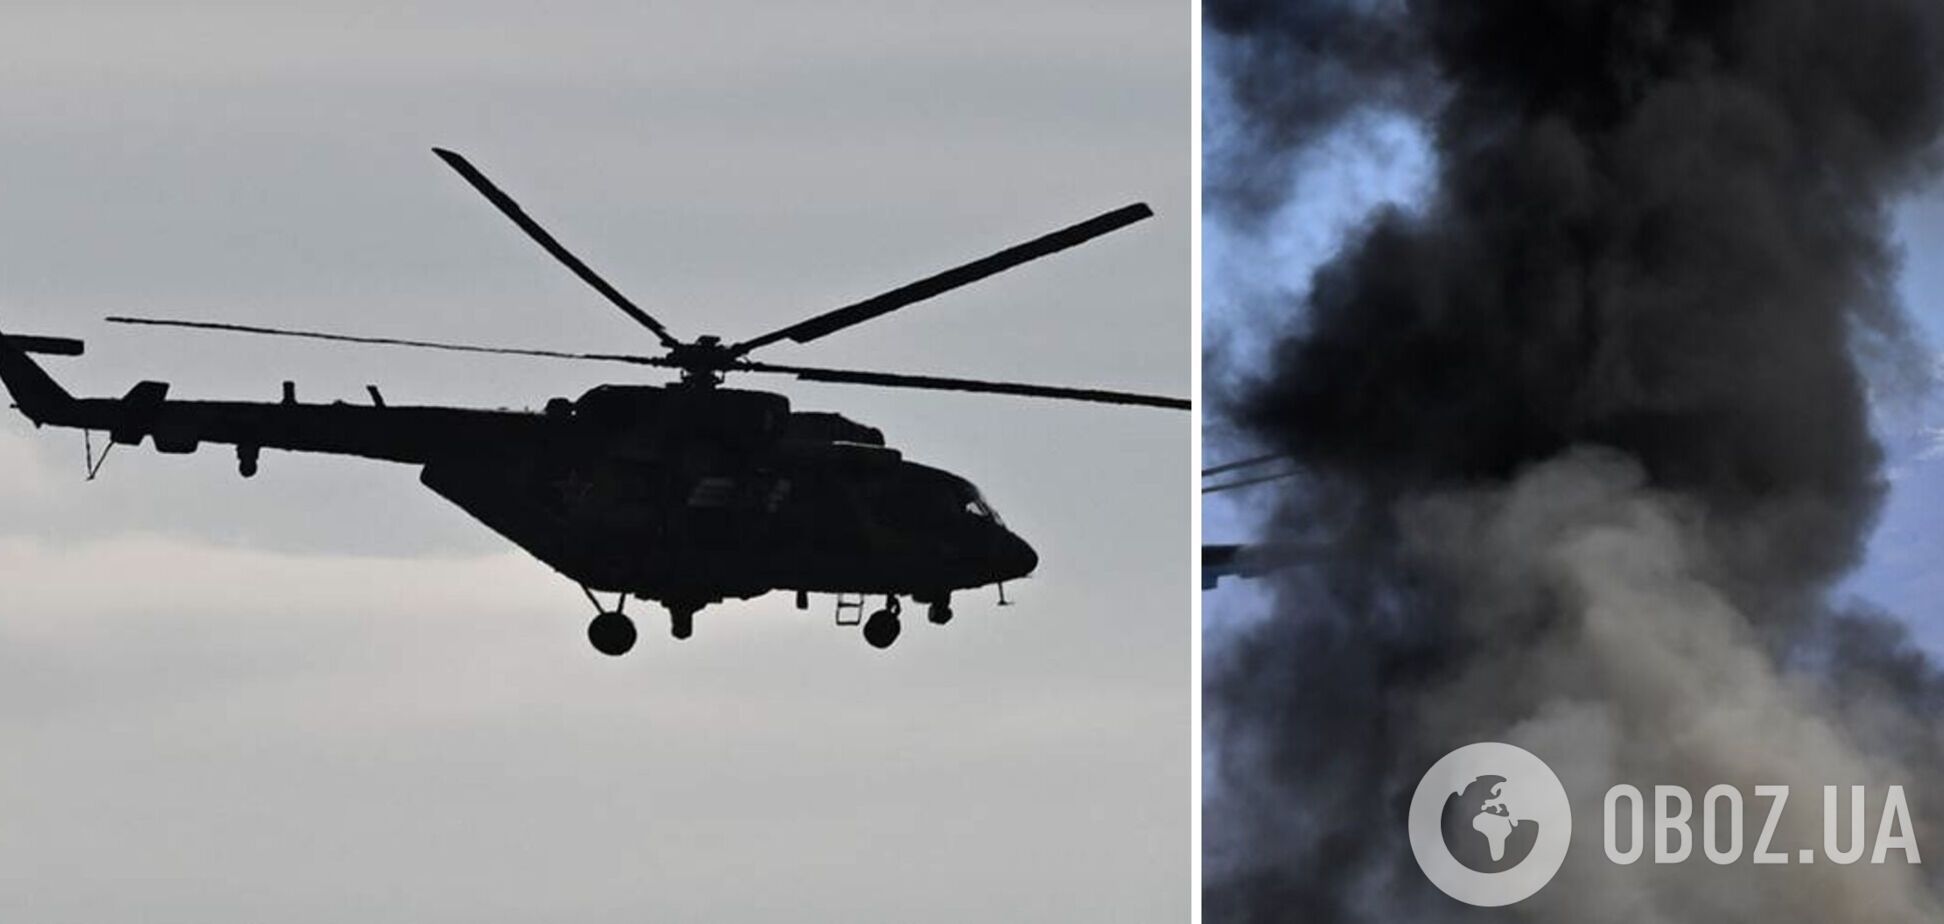 В России уничтожен вертолет Ми-8, его цена может достигать 15 млн долларов – ГУР